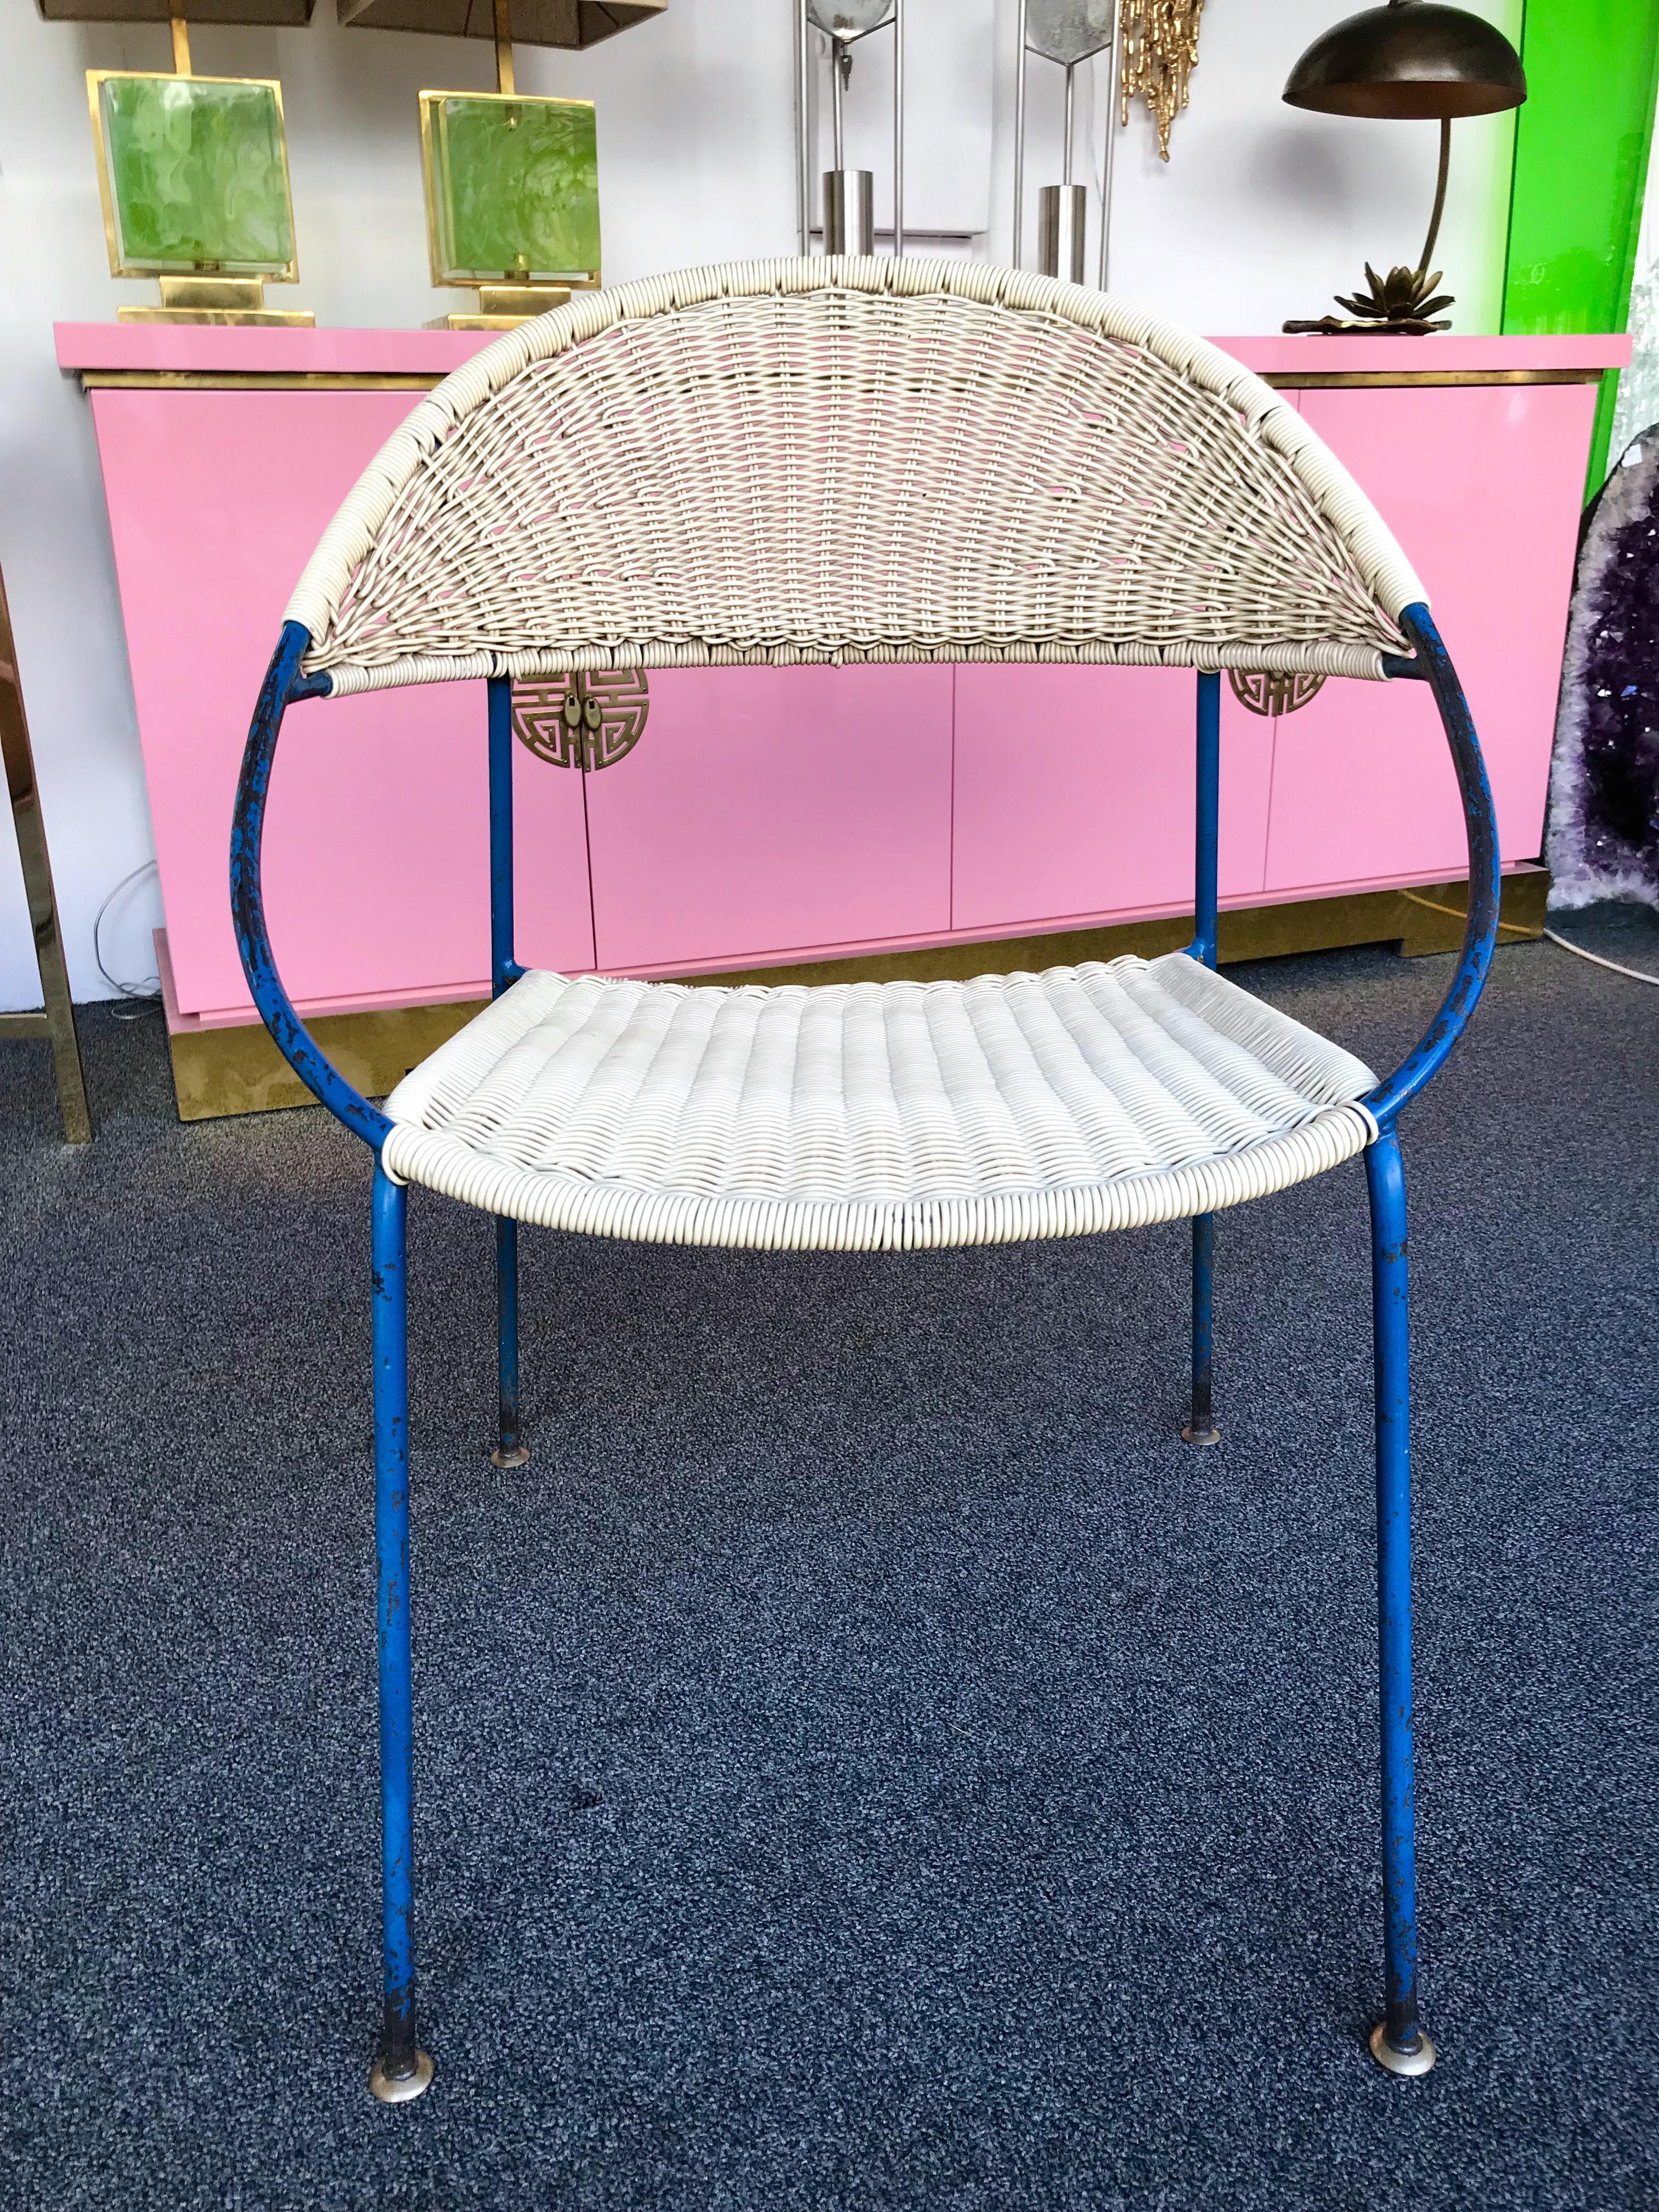 chaise dinning bridge ou petits fauteuils modèle DU41 par le designer Gastone Rinaldi pour l'éditeur RIMA en 1956. Laqué bleu, peinture originale, belle patine, pieds en laiton. Chaise référencée dans le livre Repertorio del design Italiano